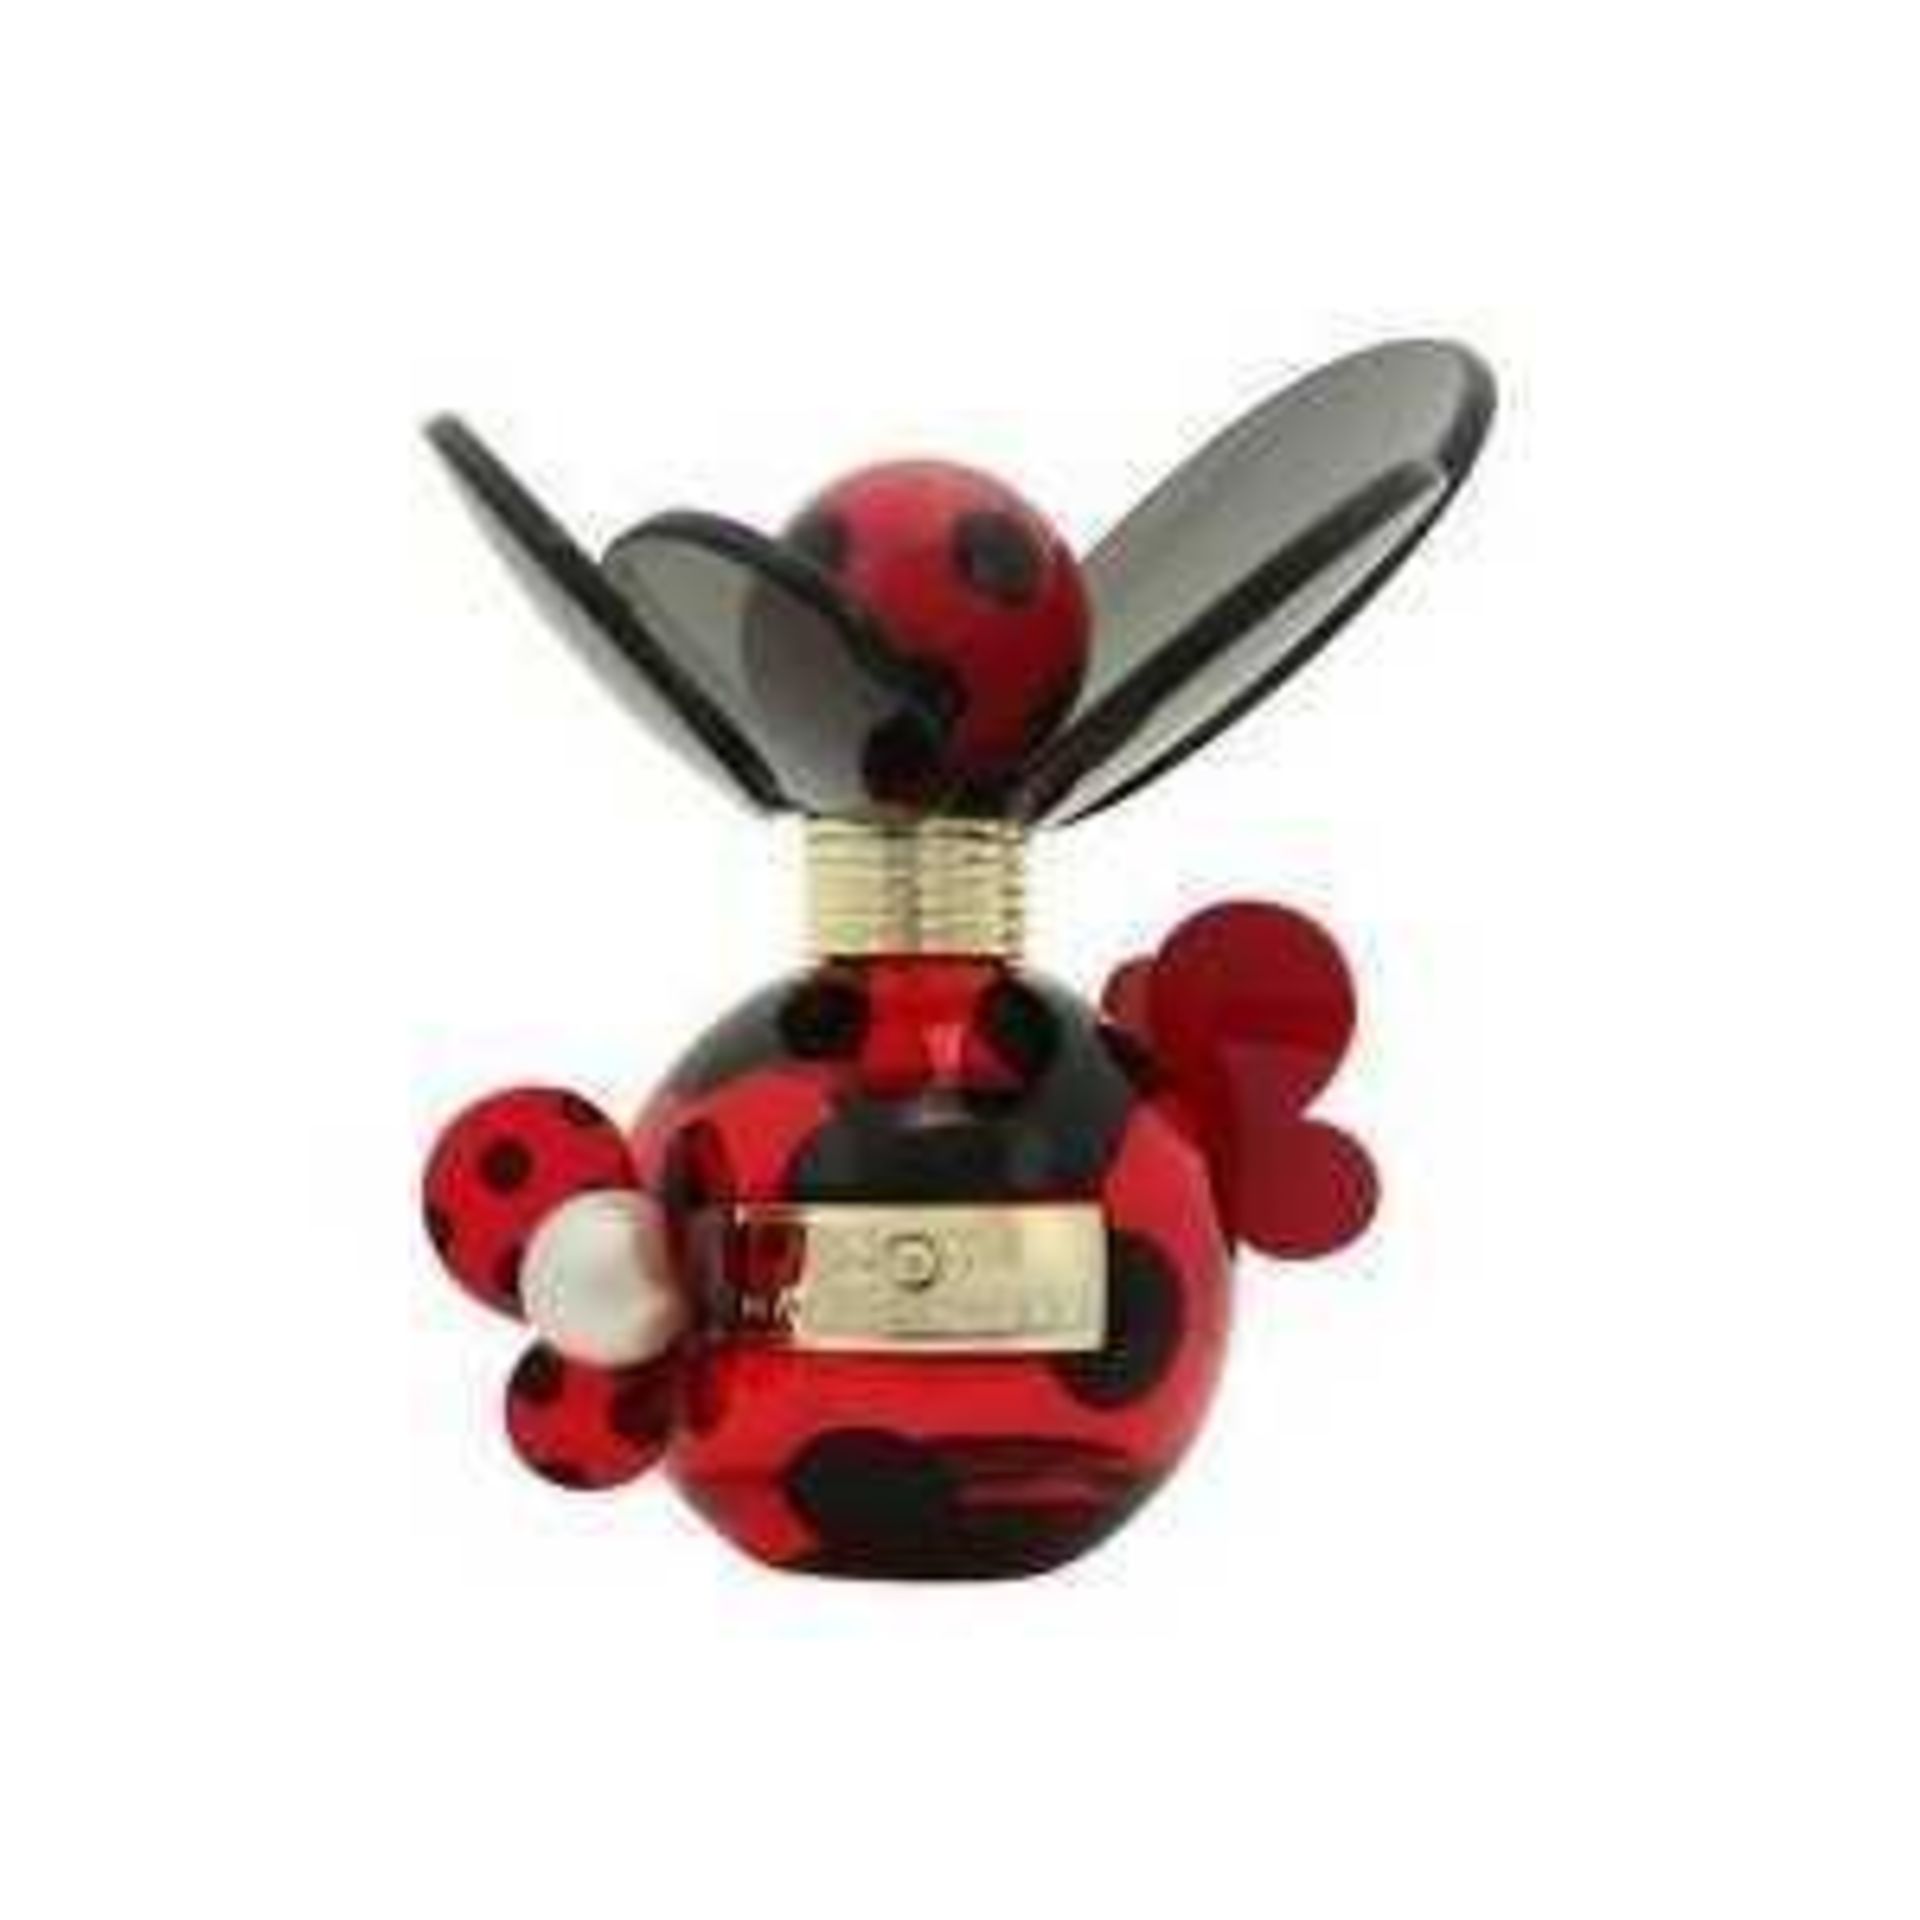 Rrp £90 Unboxed 100Ml Bottle Of Dot By Marc Jacobs Eau De Parfum (Ex Display)